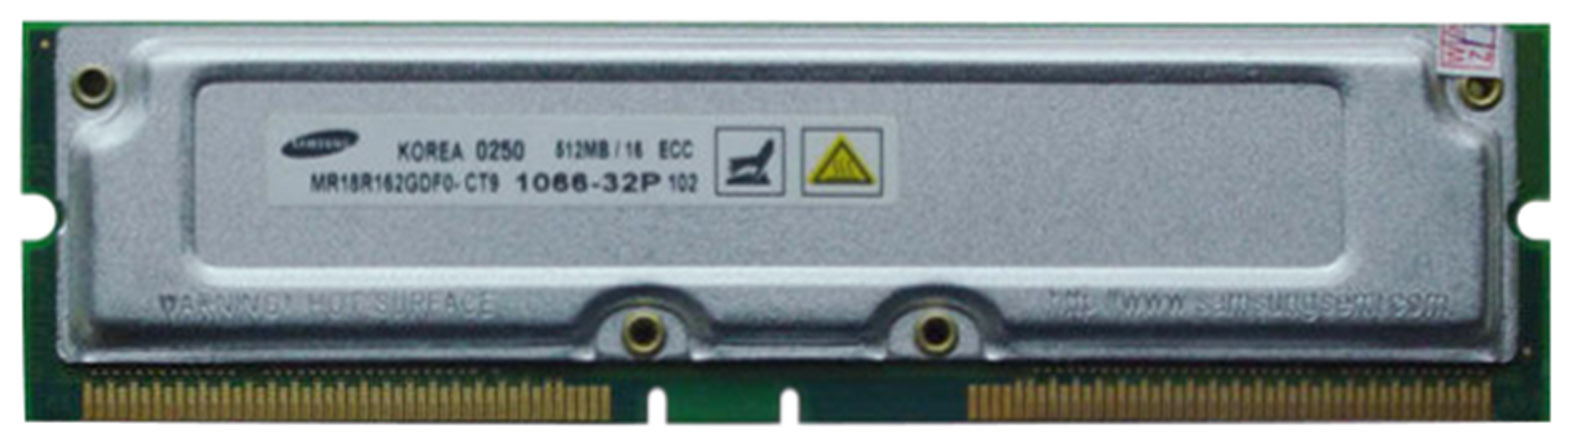 M4L-18R162G-512 M4L Certified 512MB 1066MHz ECC 32P 184-Pin Rambus Module